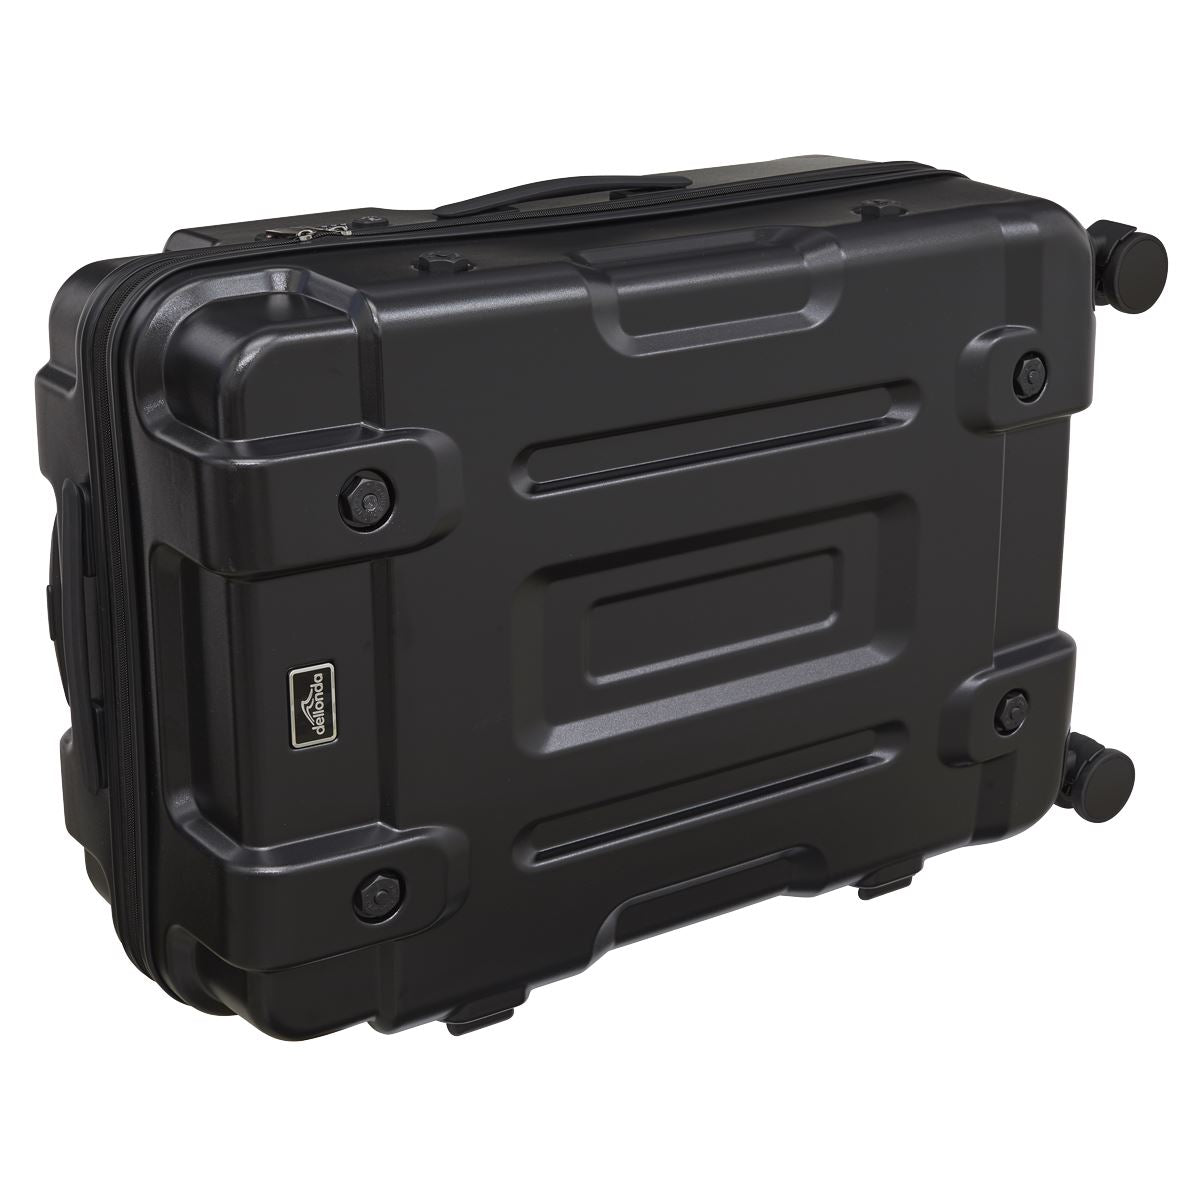 Dellonda 3-Piece Lightweight ABS Luggage Set  - 20", 24", 28" - Black - DL10